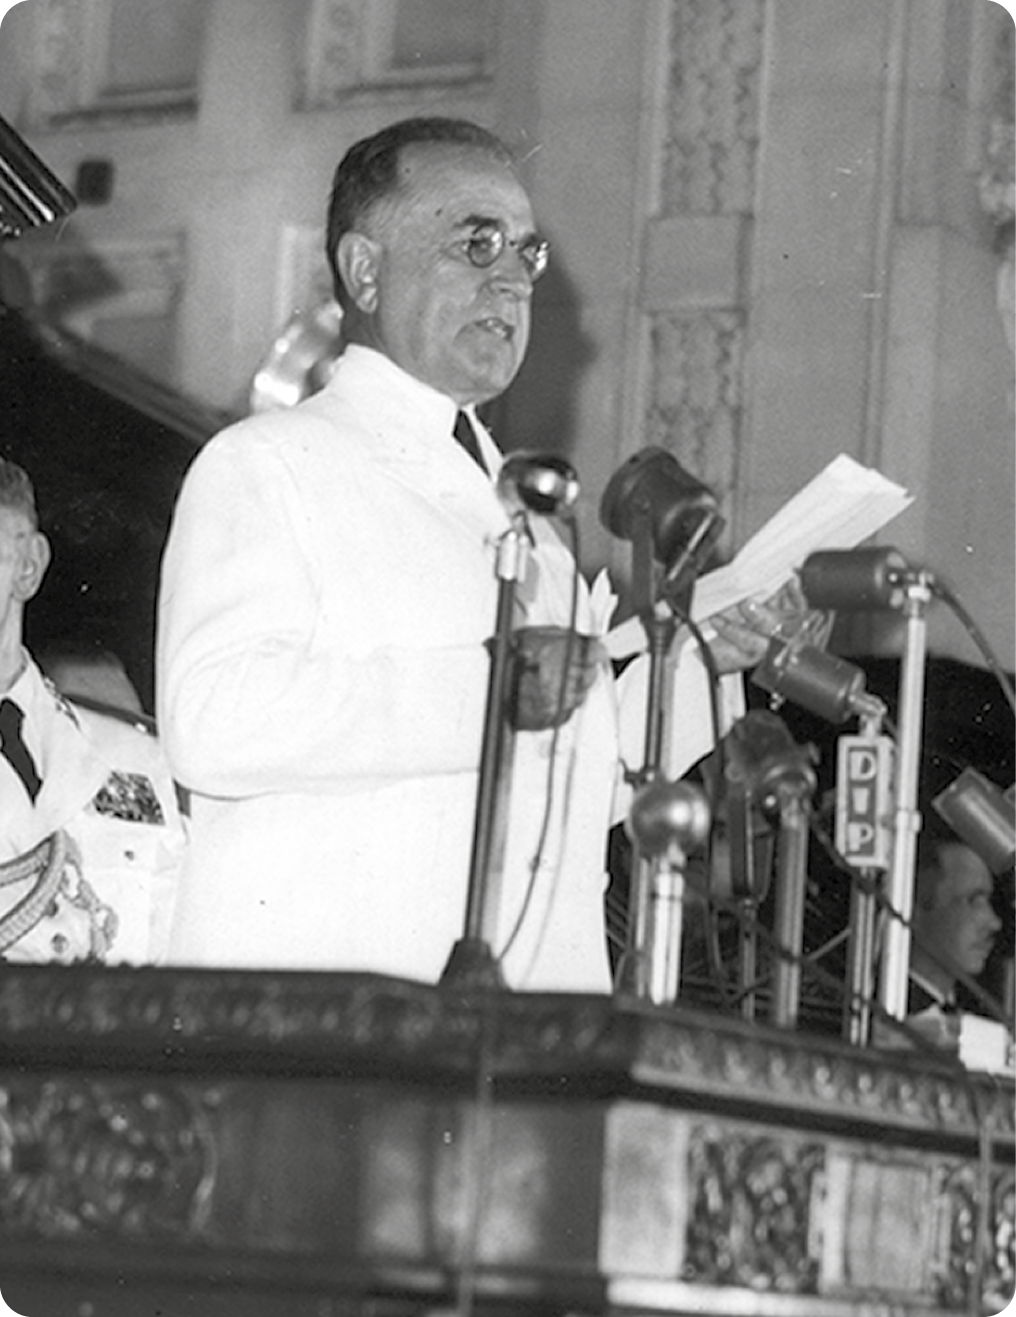 Fotografia em preto e branco. Homem com cabelos curtos, usando óculos e terno branco, está de pé em um púlpito com microfones e segurando uma folha de papel com as mãos.